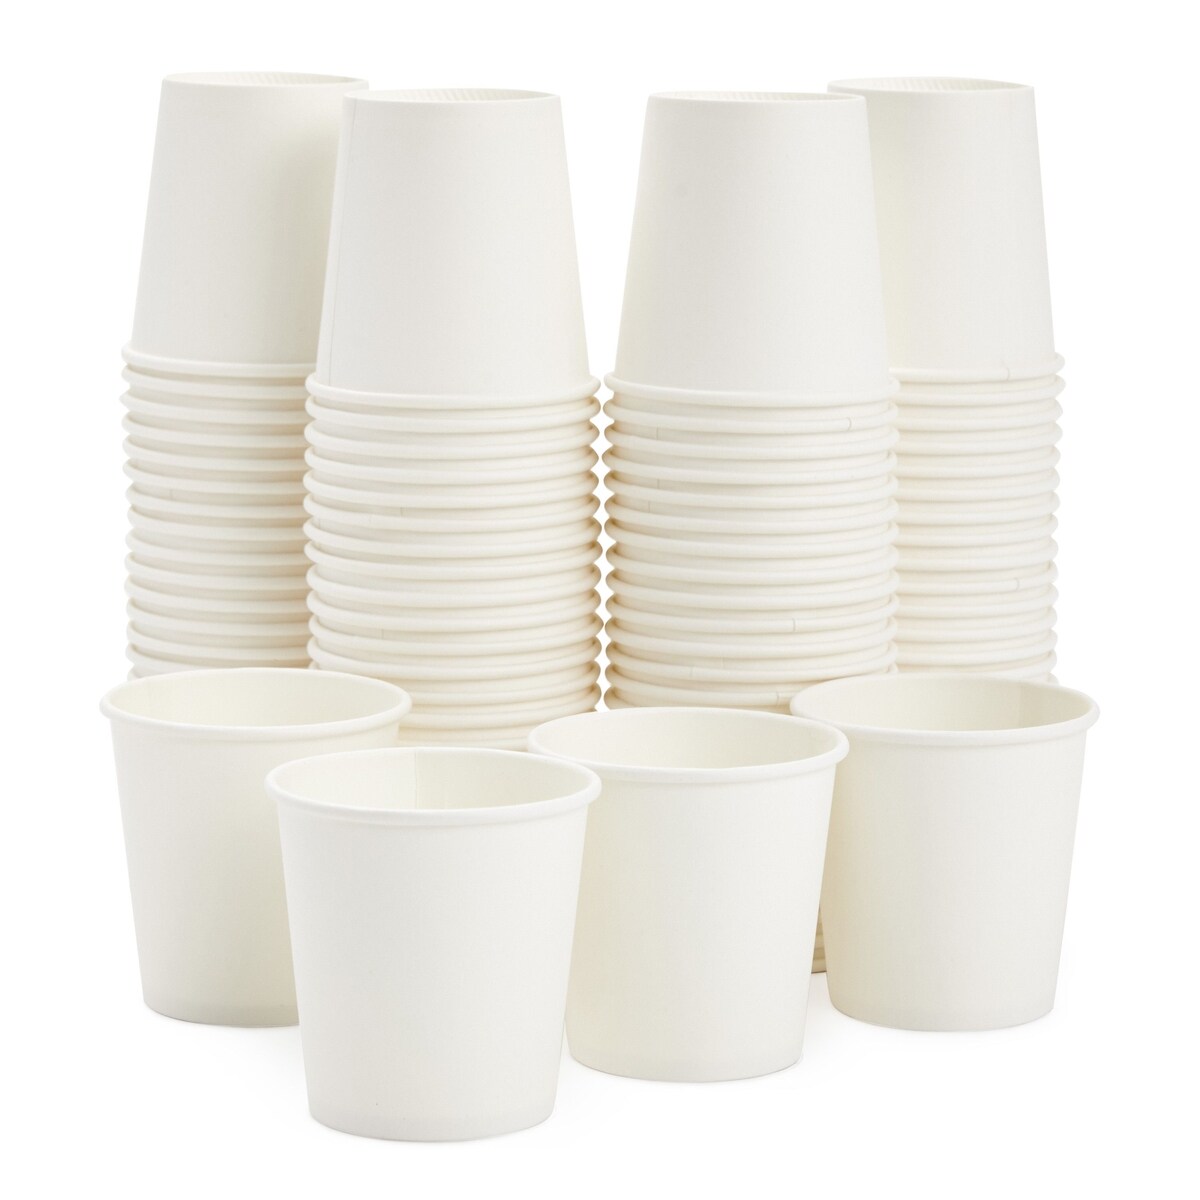 4oz Christmas Espresso Cup Set - Set of 4, Ceramic, Christmas